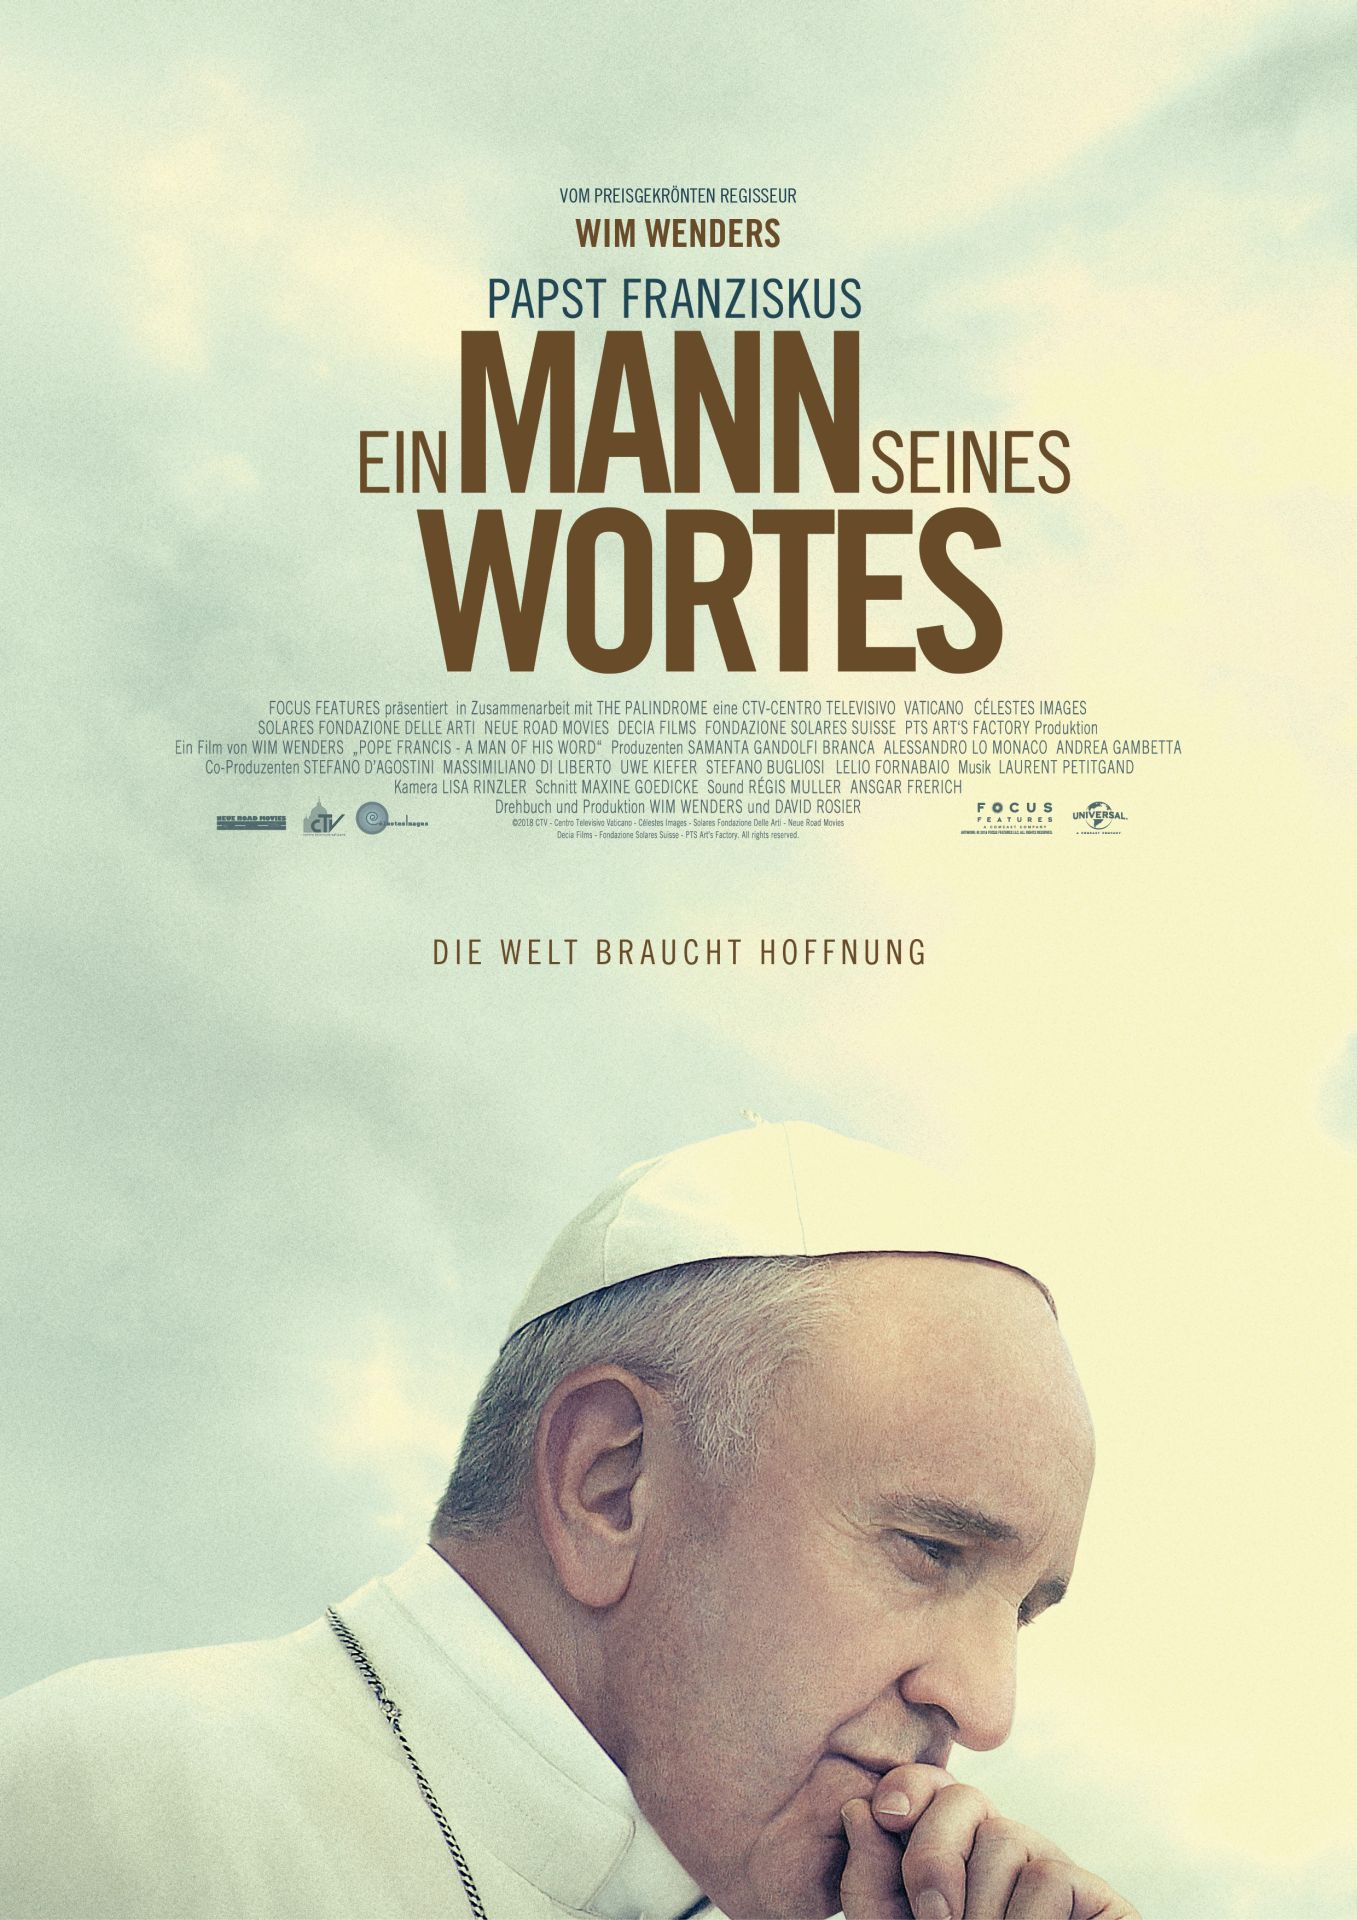 Papst Film